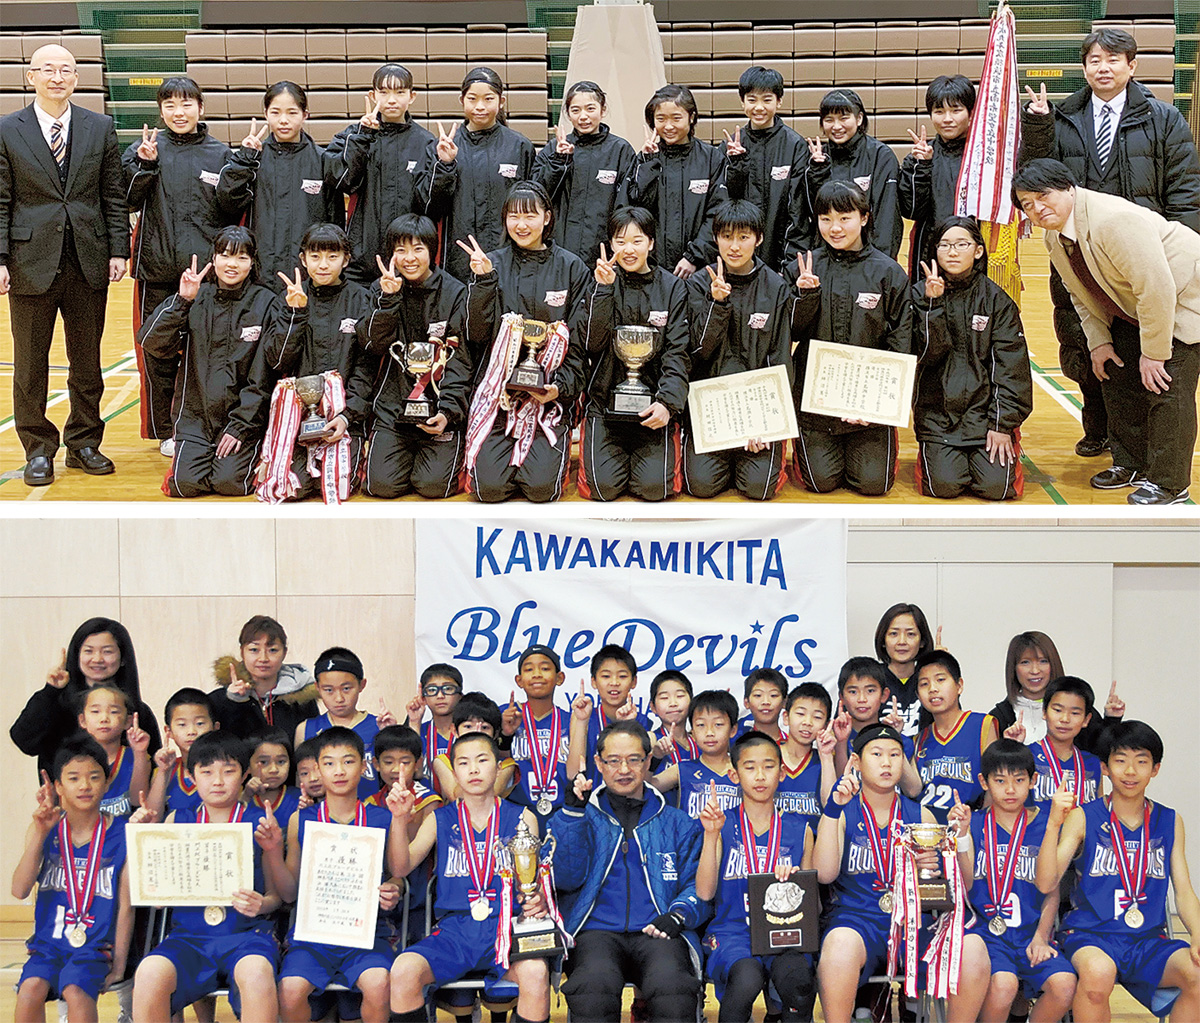 区内２チーム バスケ県大会で優勝 練習成果や強み生かす 戸塚区 タウンニュース